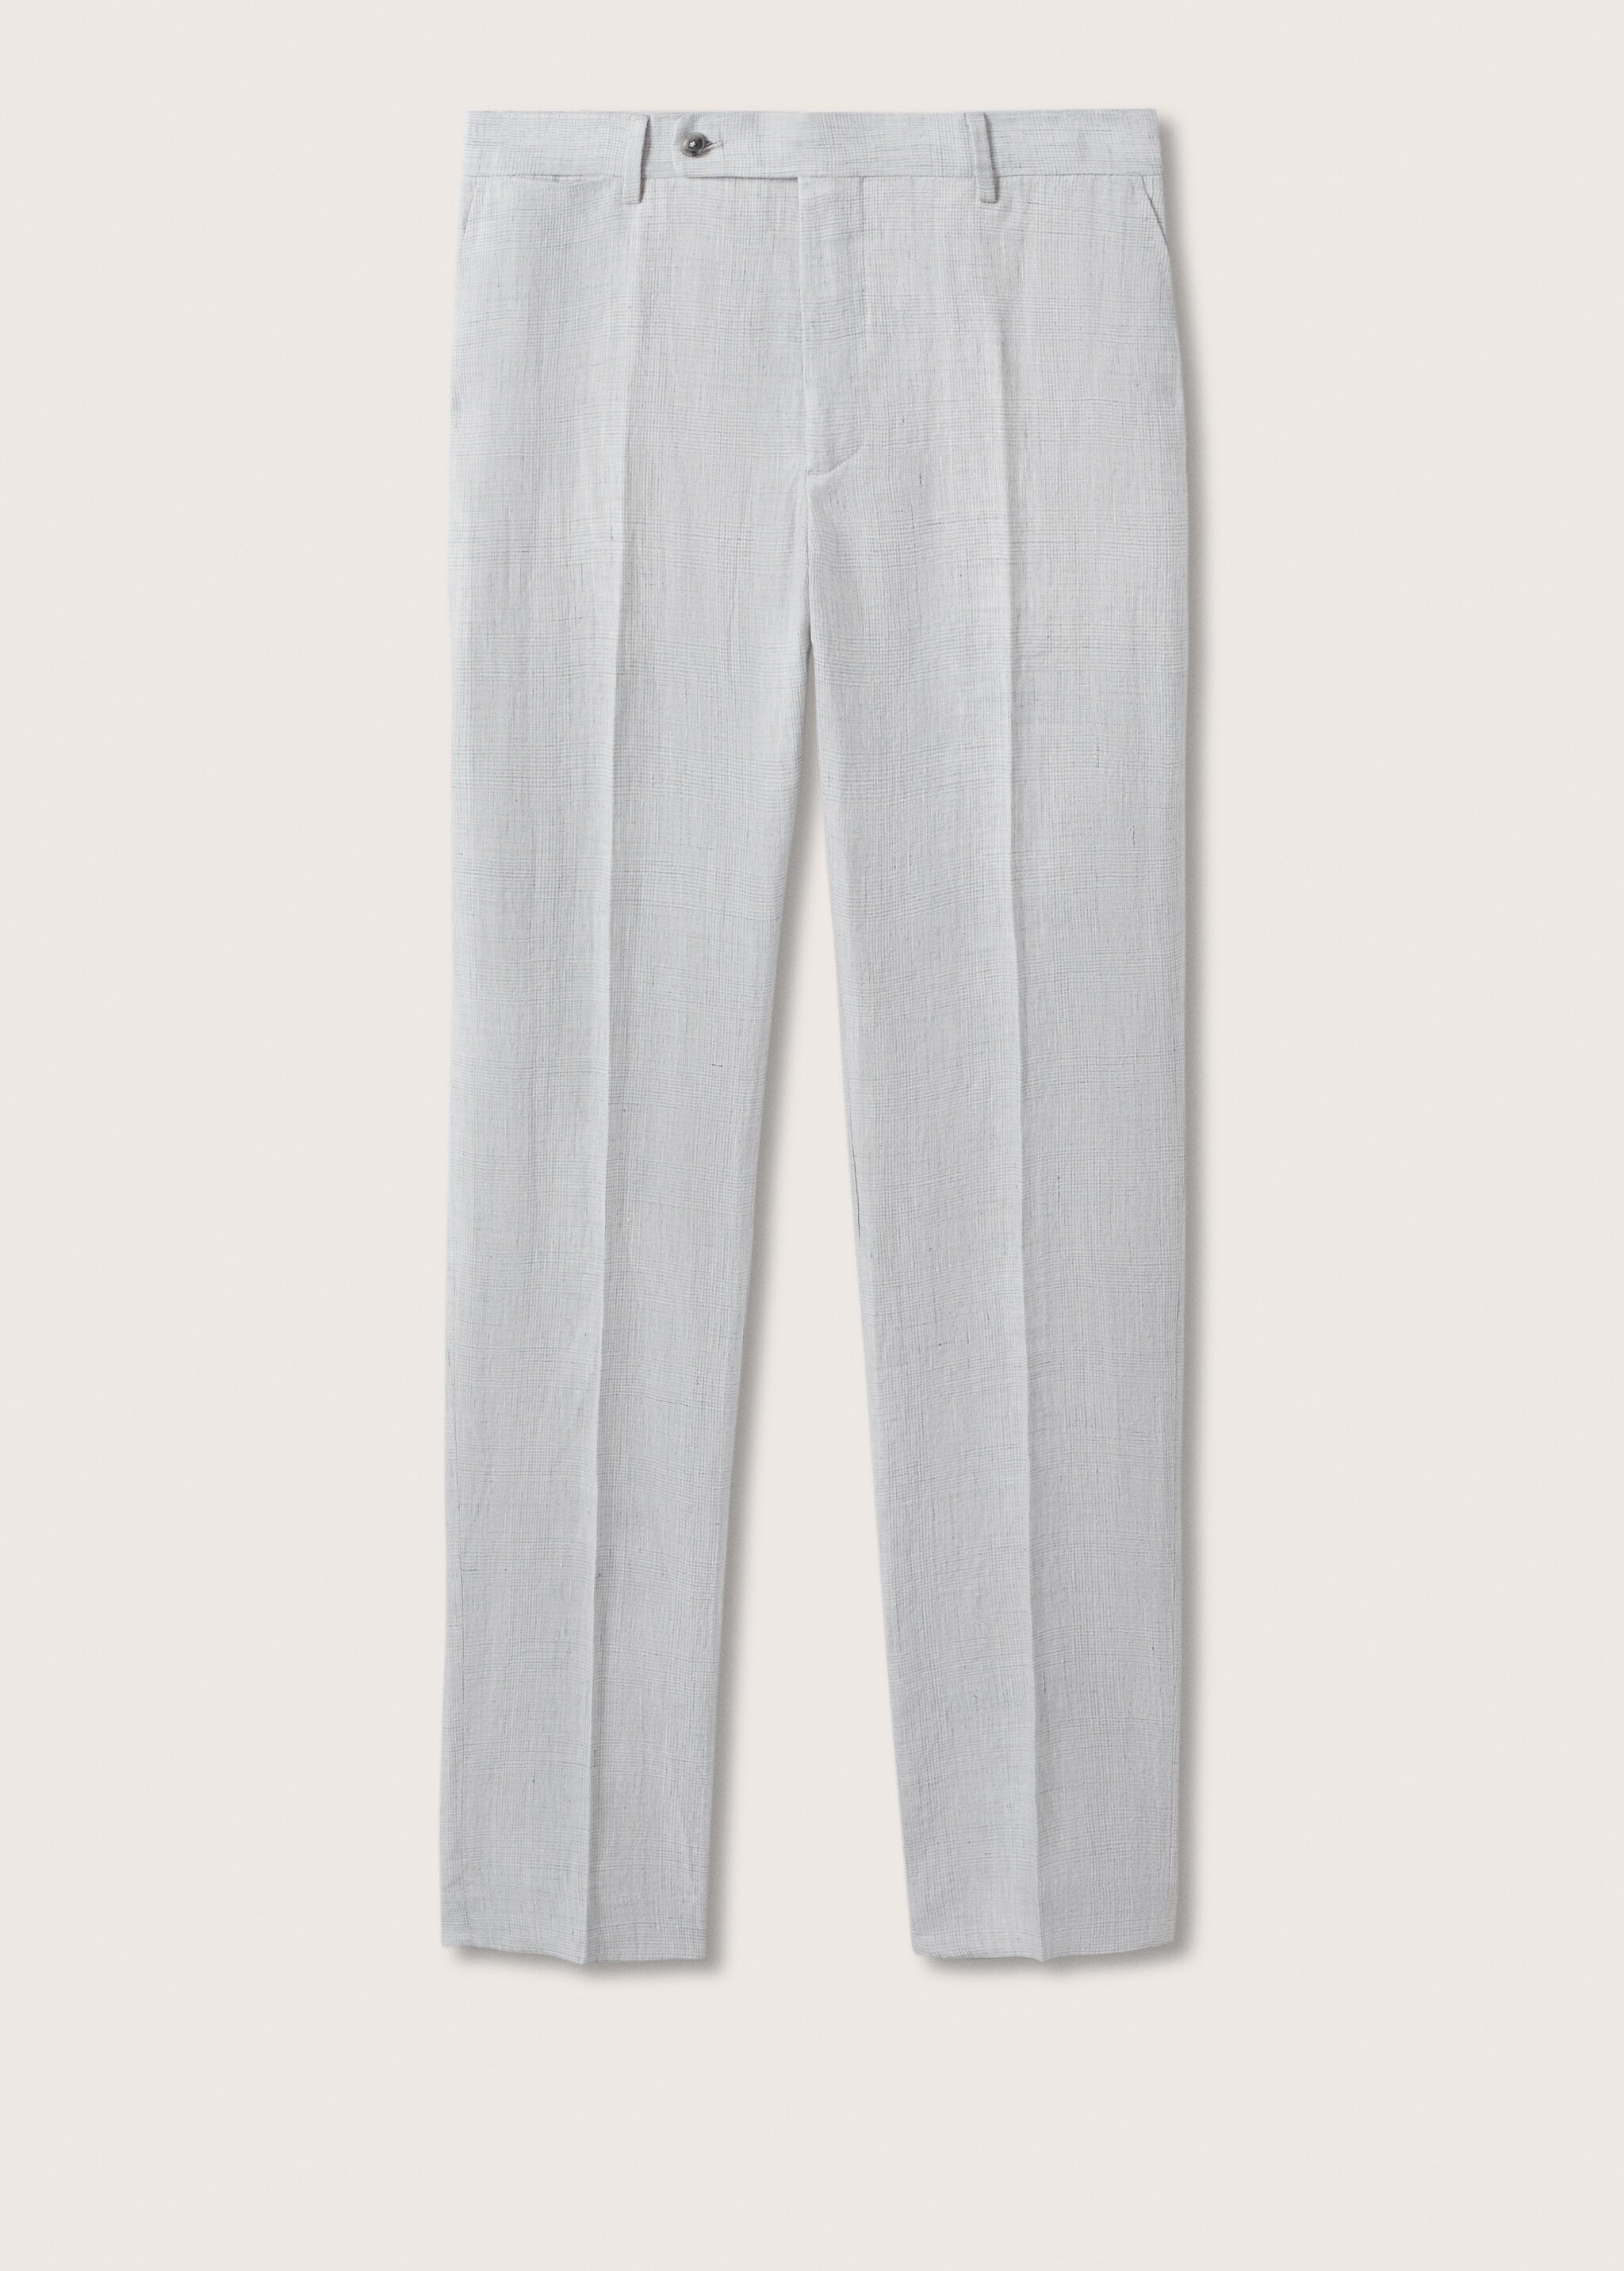 Pantalón traje lino - Artículo sin modelo